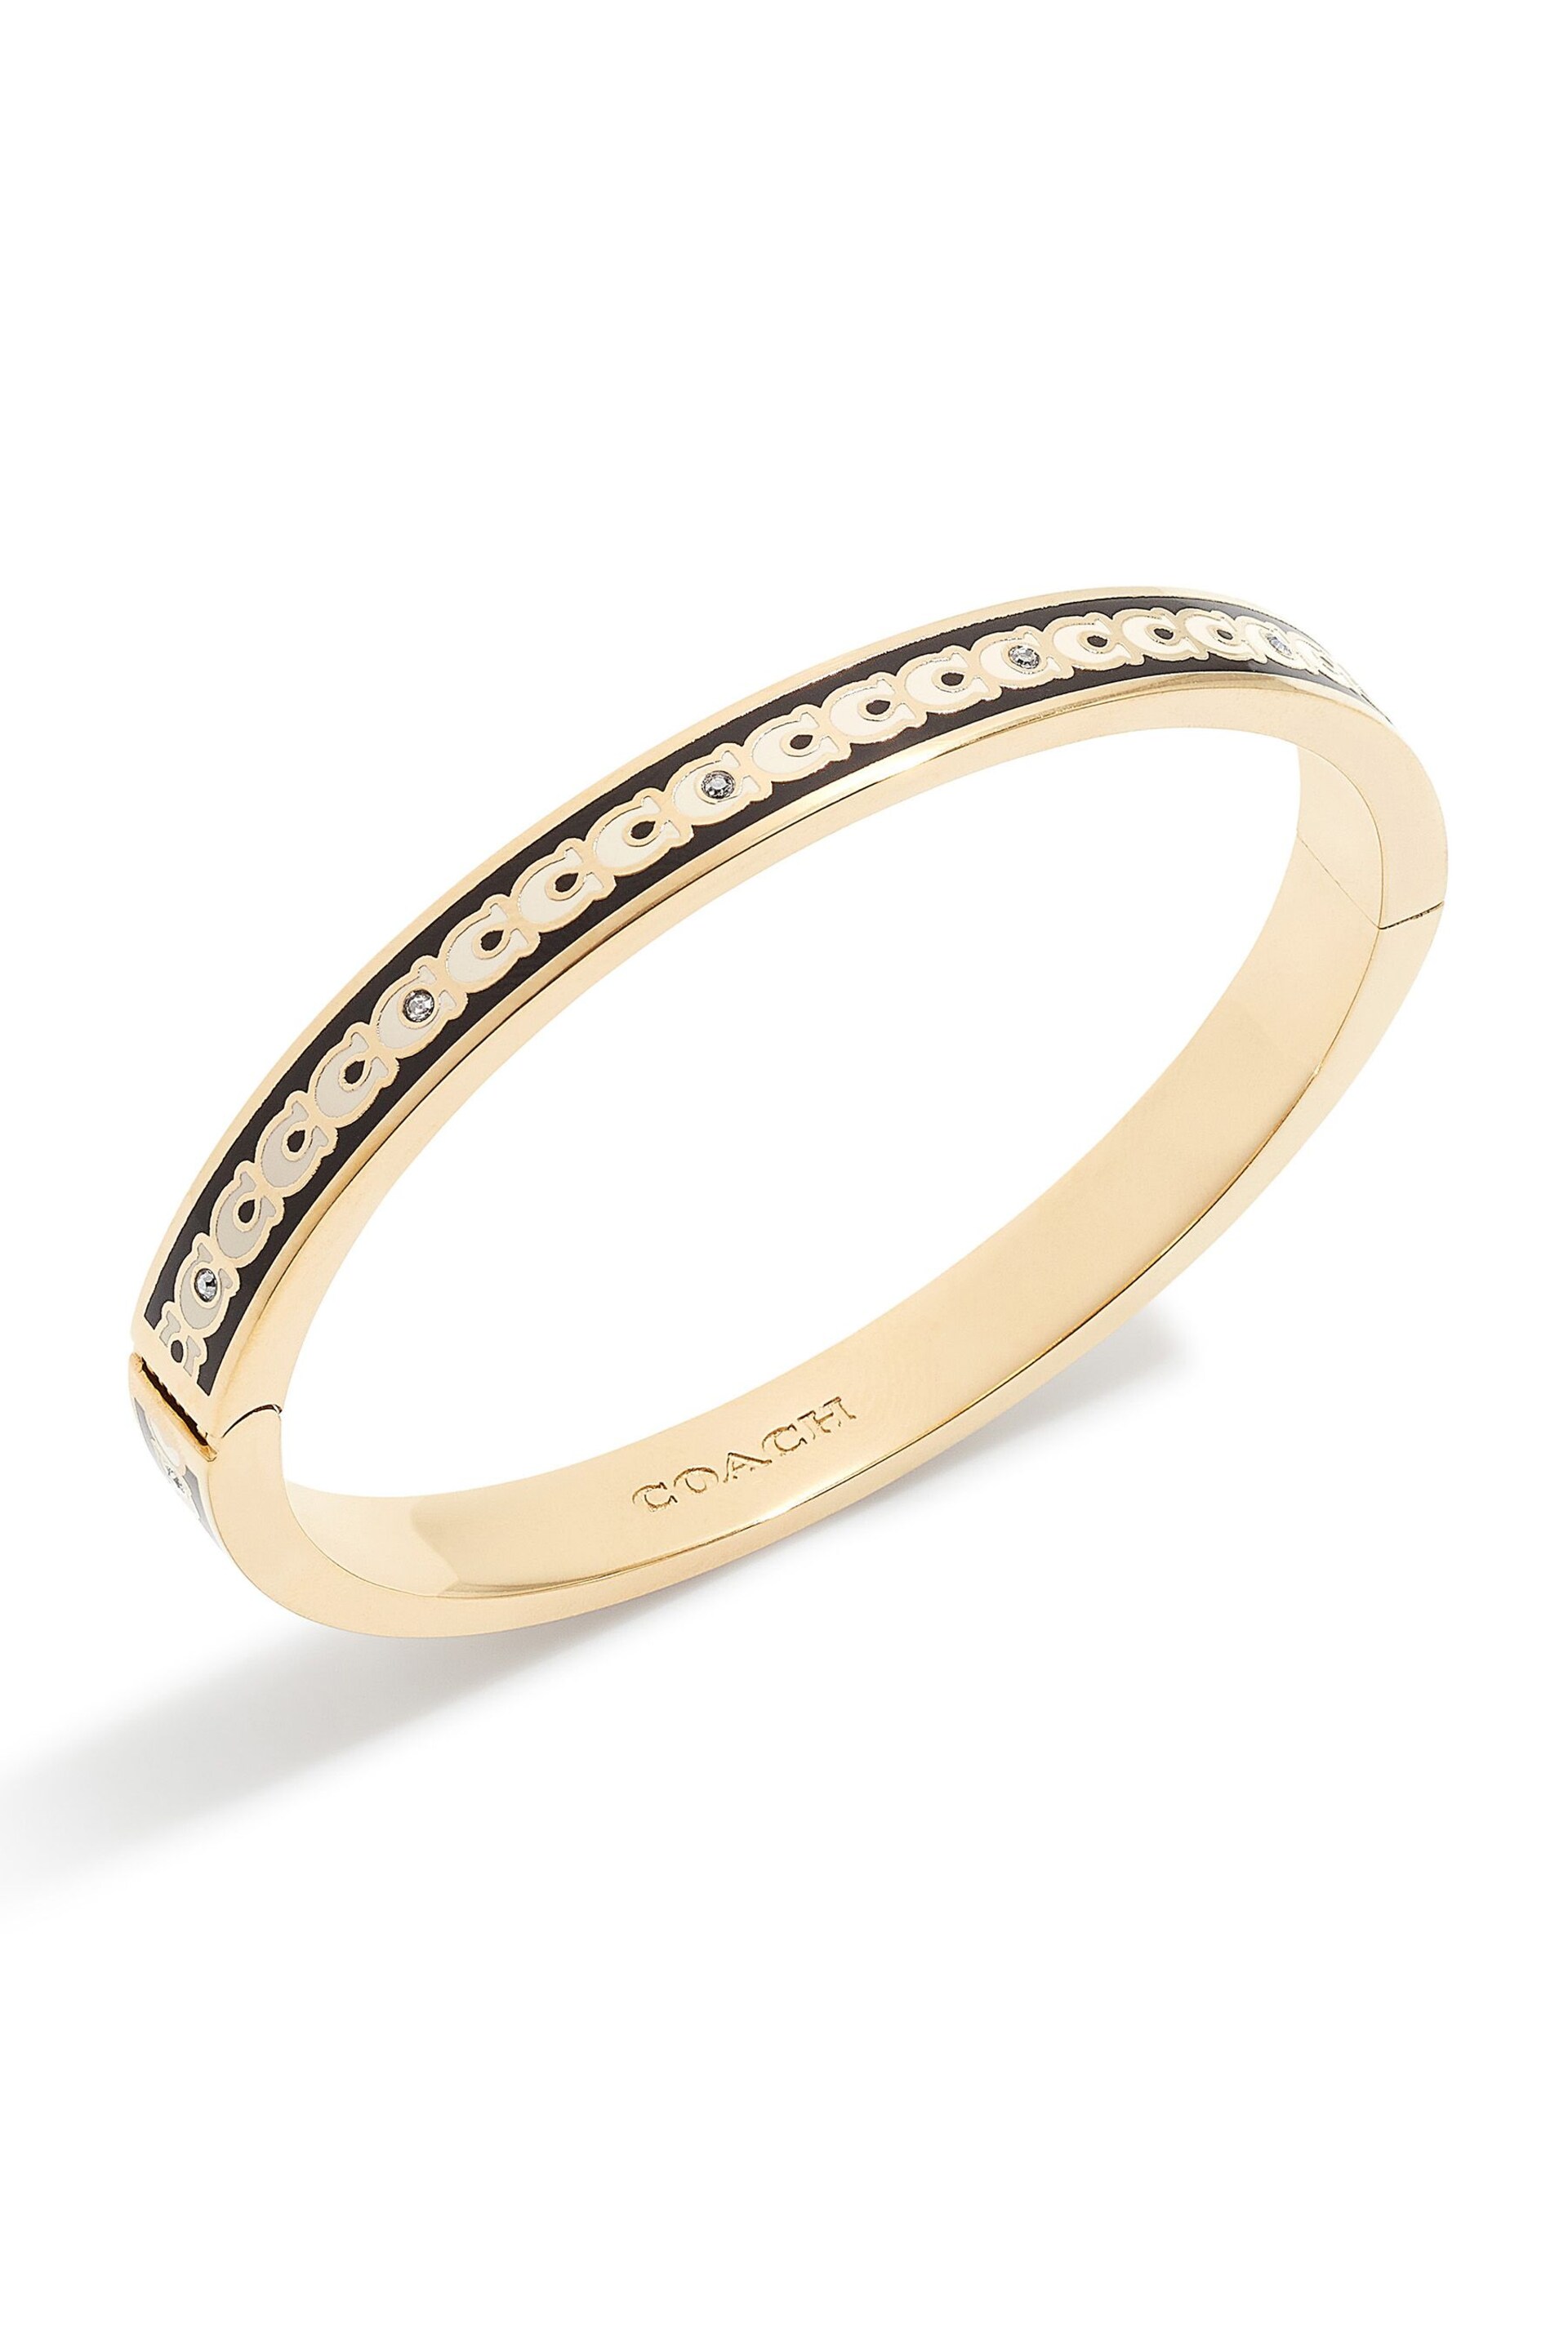 COACH Gold Tone Signature Bangle Bracelet - Image 2 of 3